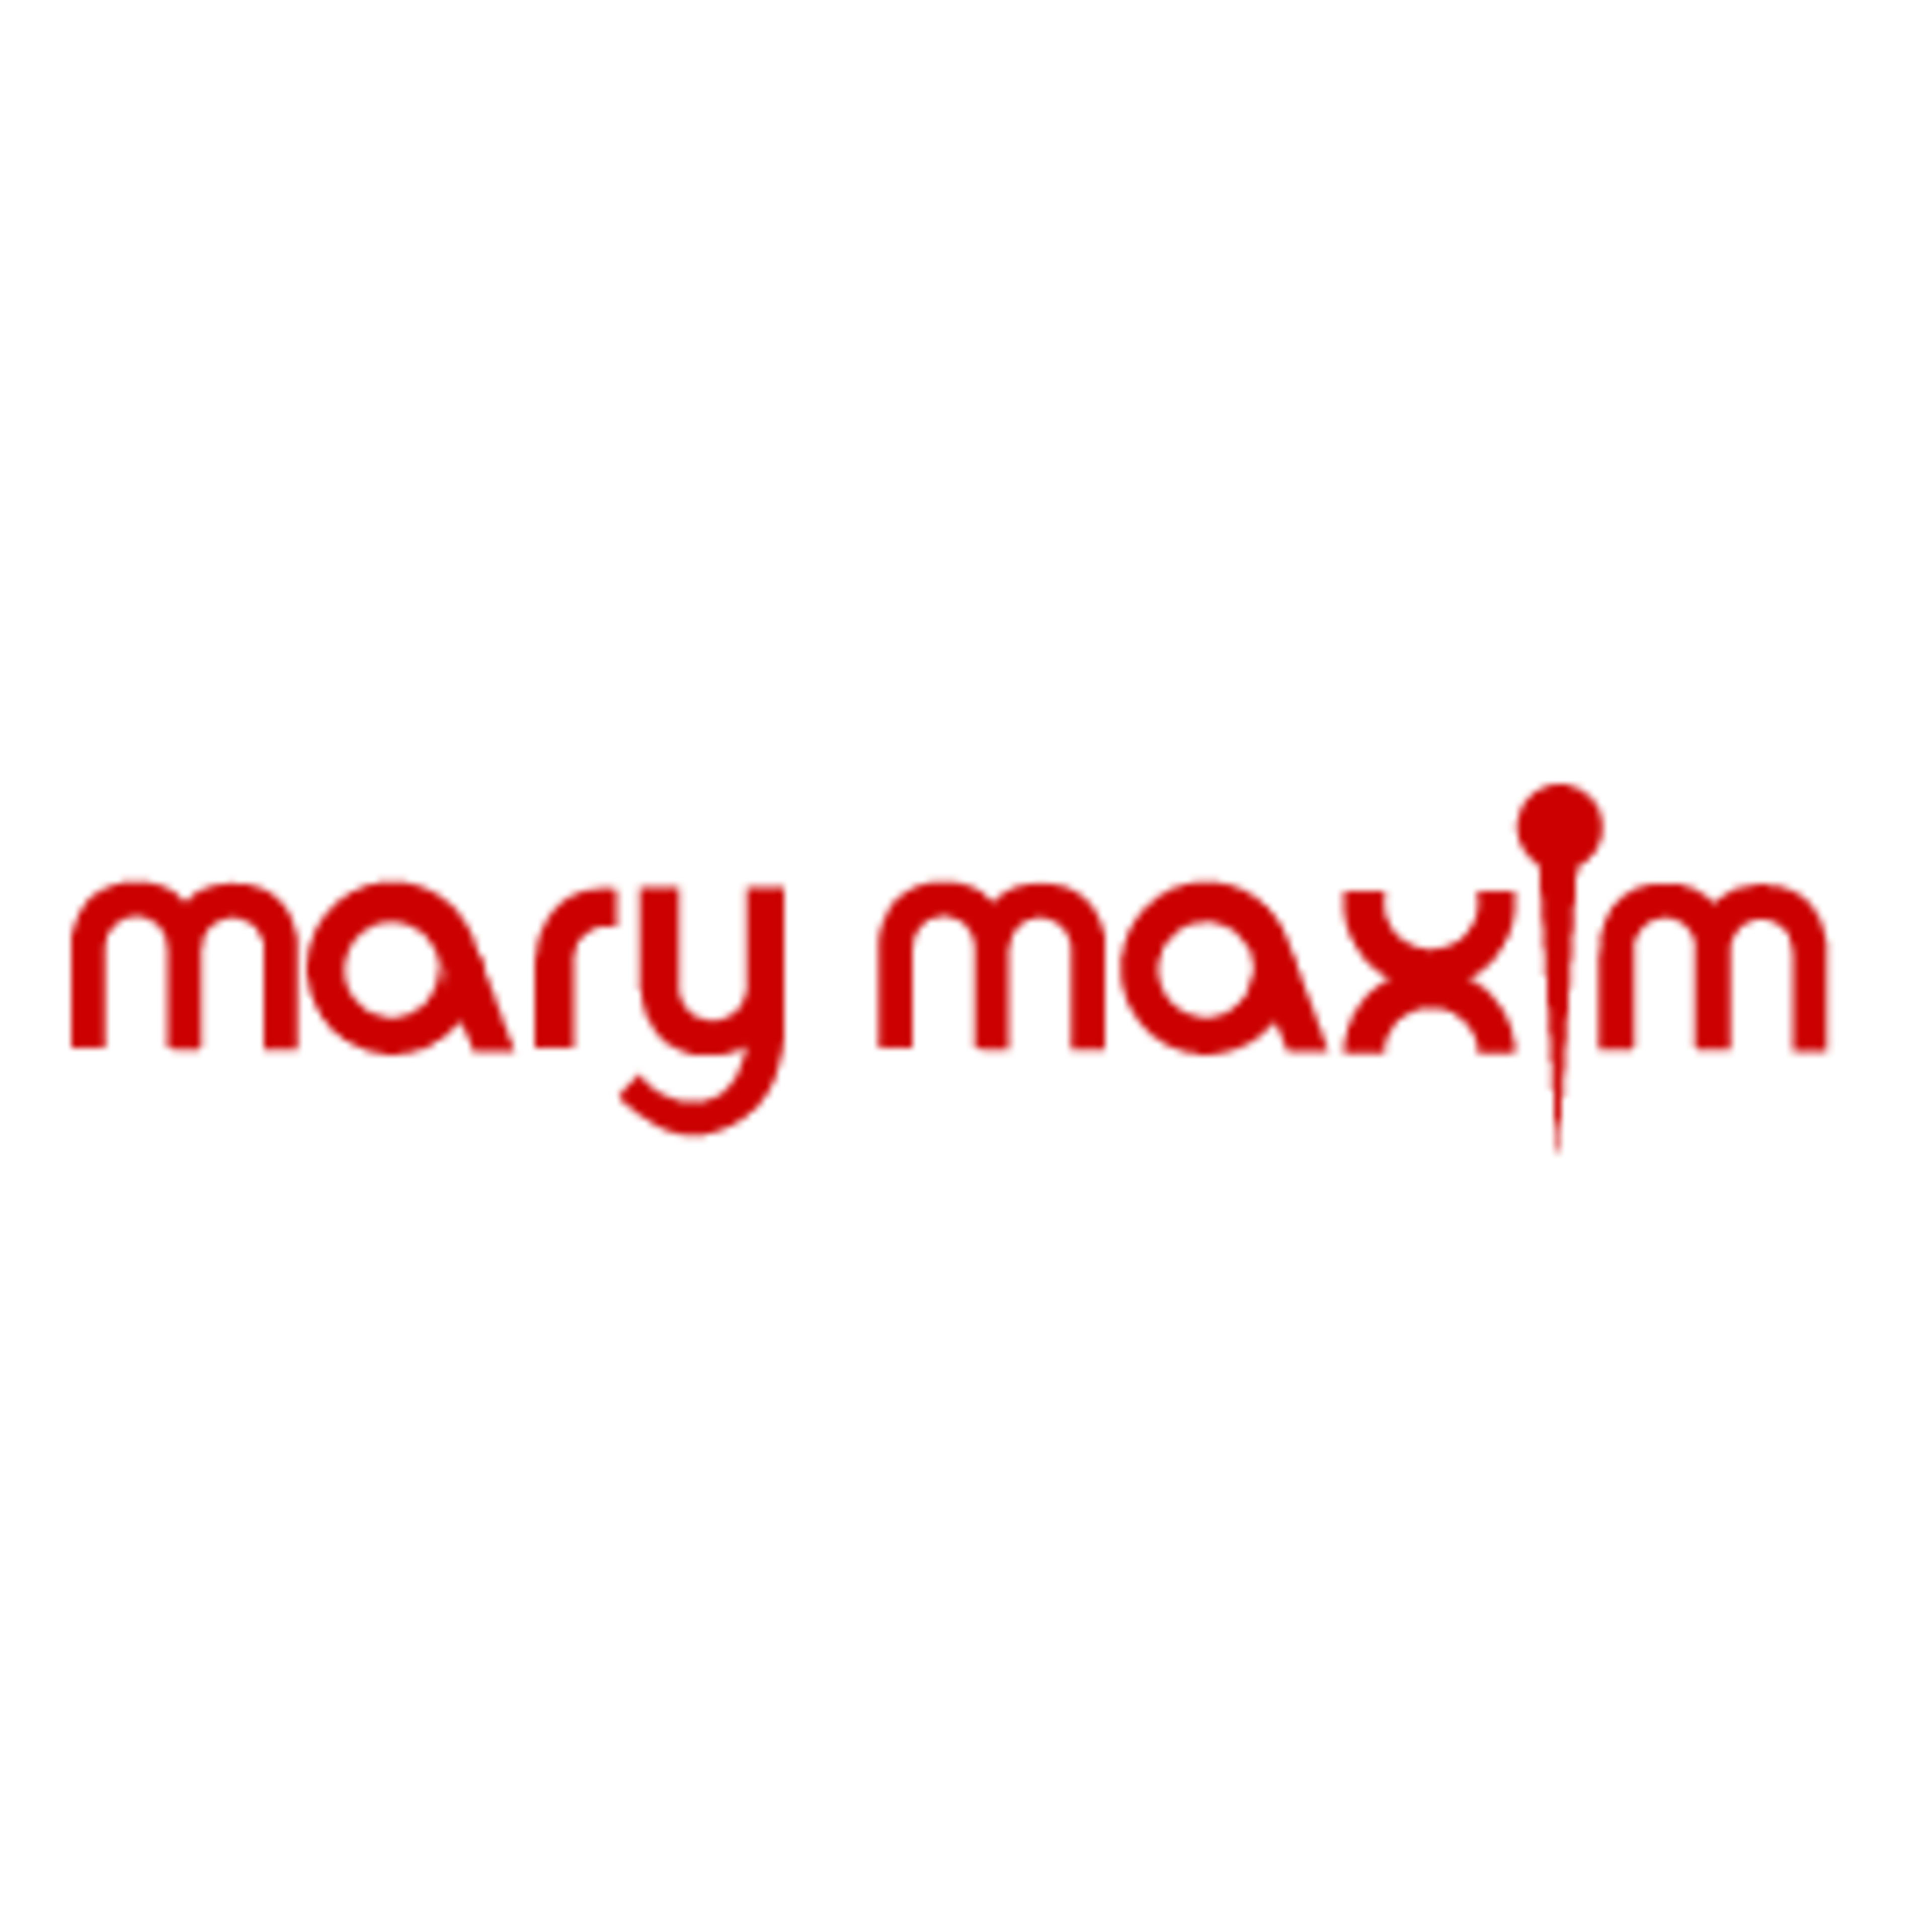 Mary MaximCode